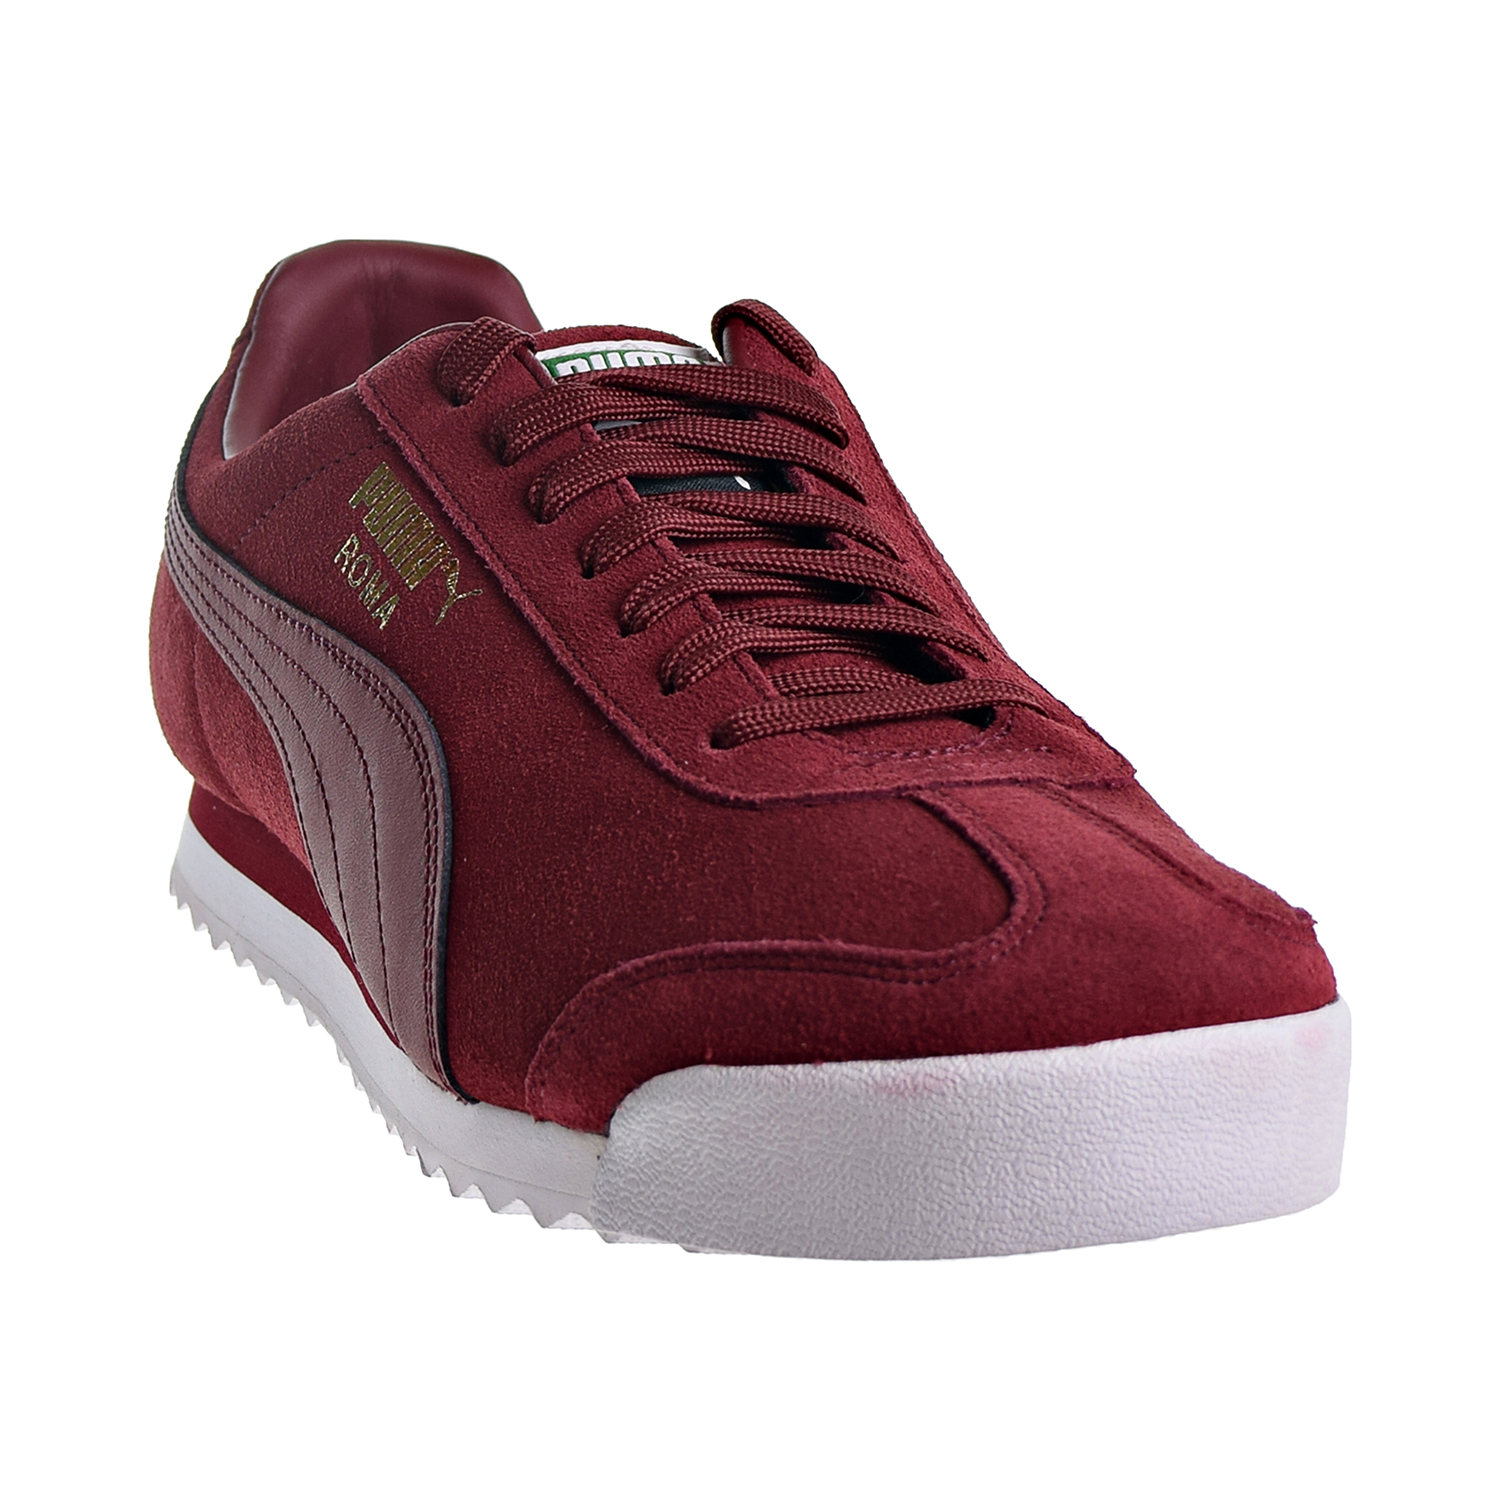 Puma Roma Suede Men's Shoes Pomegranate 365437-09 | eBay